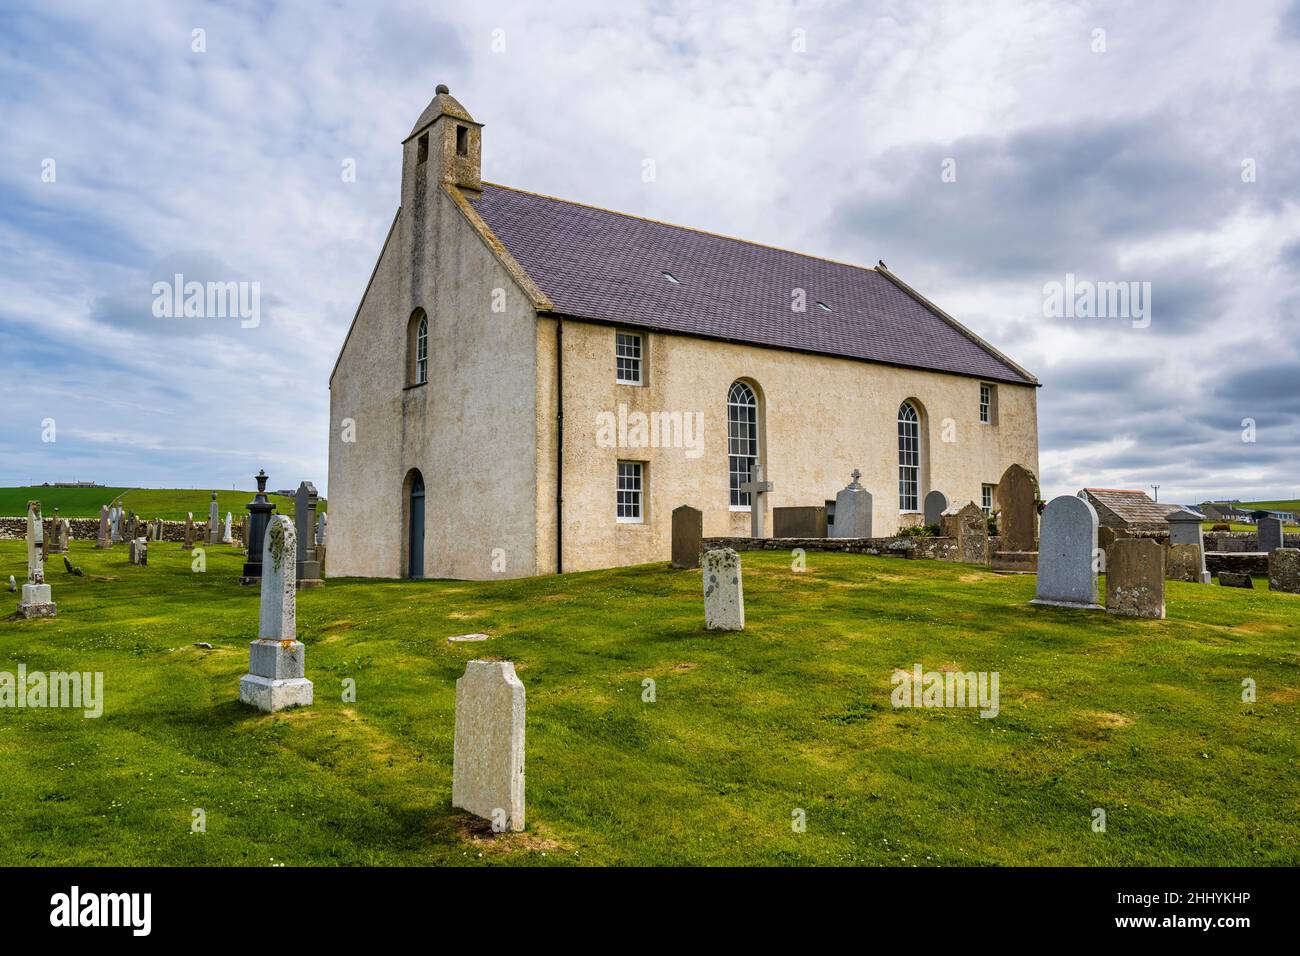 Restauration du Kirk de St Peter, situé à côté de la baie de Skaill, près de Sandwick, sur le continent Orkney, en Écosse Banque D'Images